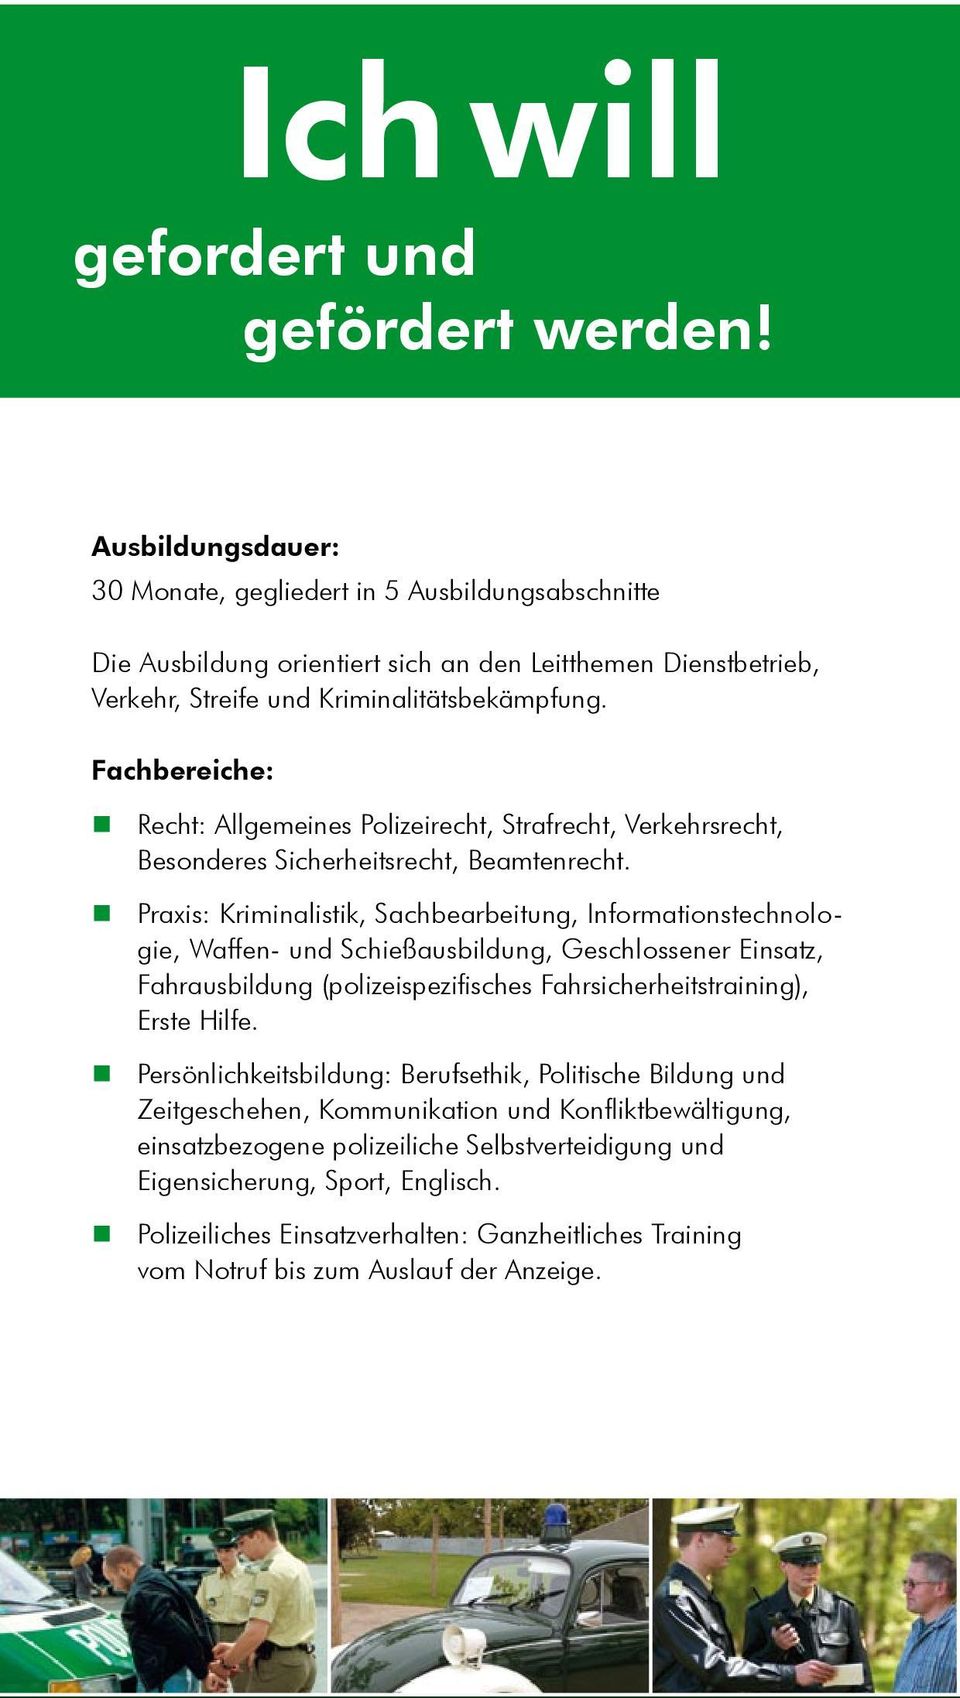 Fachbereiche: Recht: Allgemeines Polizeirecht, Strafrecht, Verkehrsrecht, Besonderes Sicherheitsrecht, Beamtenrecht.